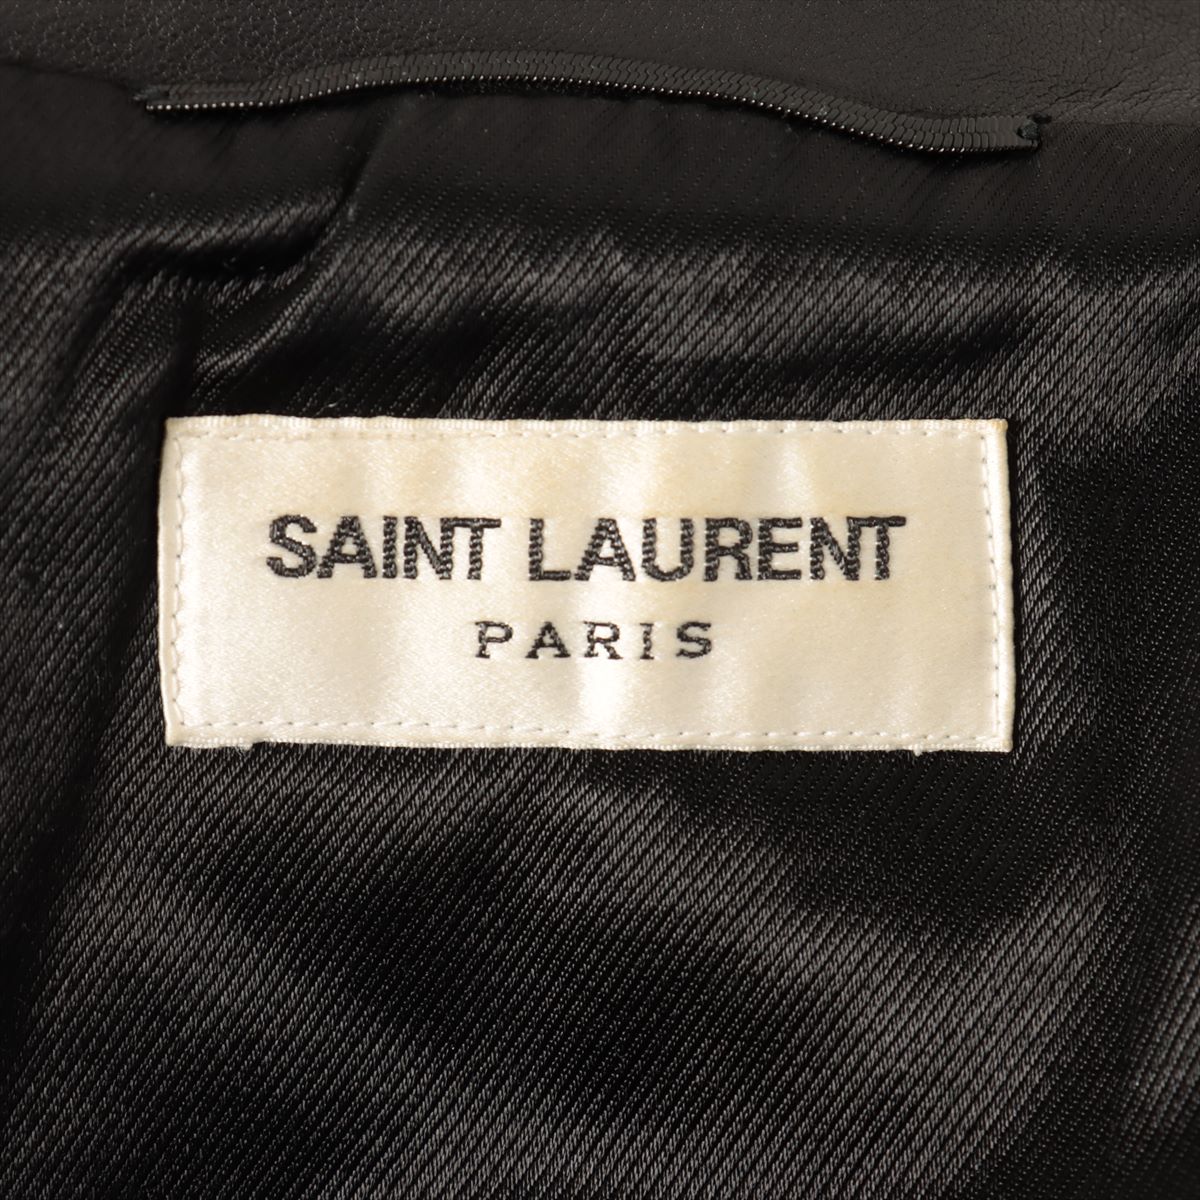 Saint Laurent classic motorcycles 2016 Leather Leather jacket 44 Men's Black